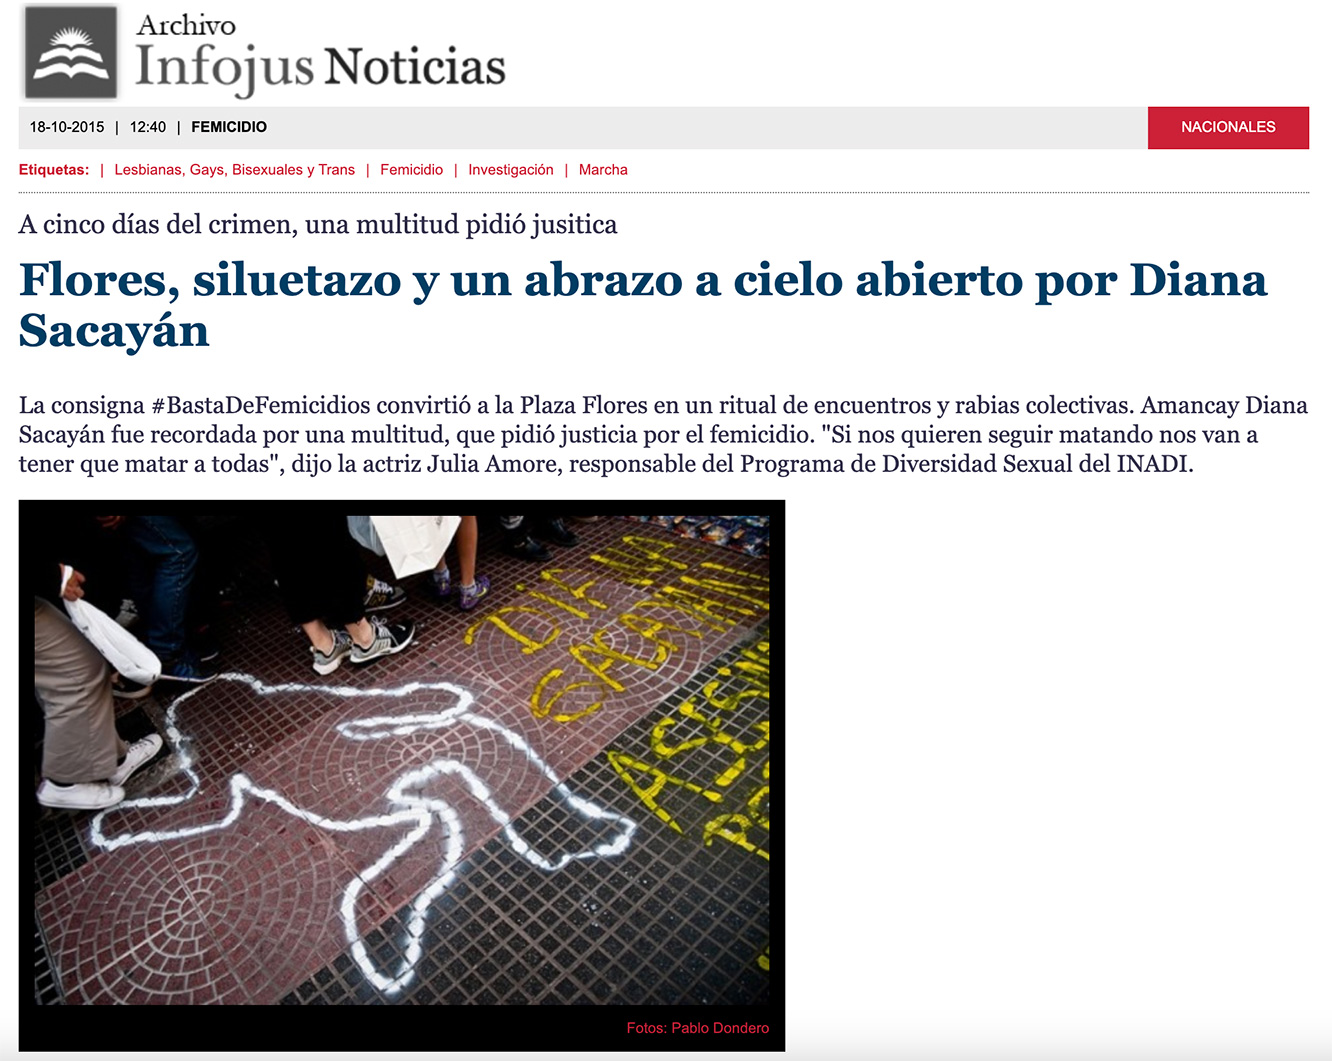 Imagen de una silueta en el piso y la gente pasando por al rededor en la Av. Rivadavia a cinco días del crimen de la activista Amancay Diana Sacayán.